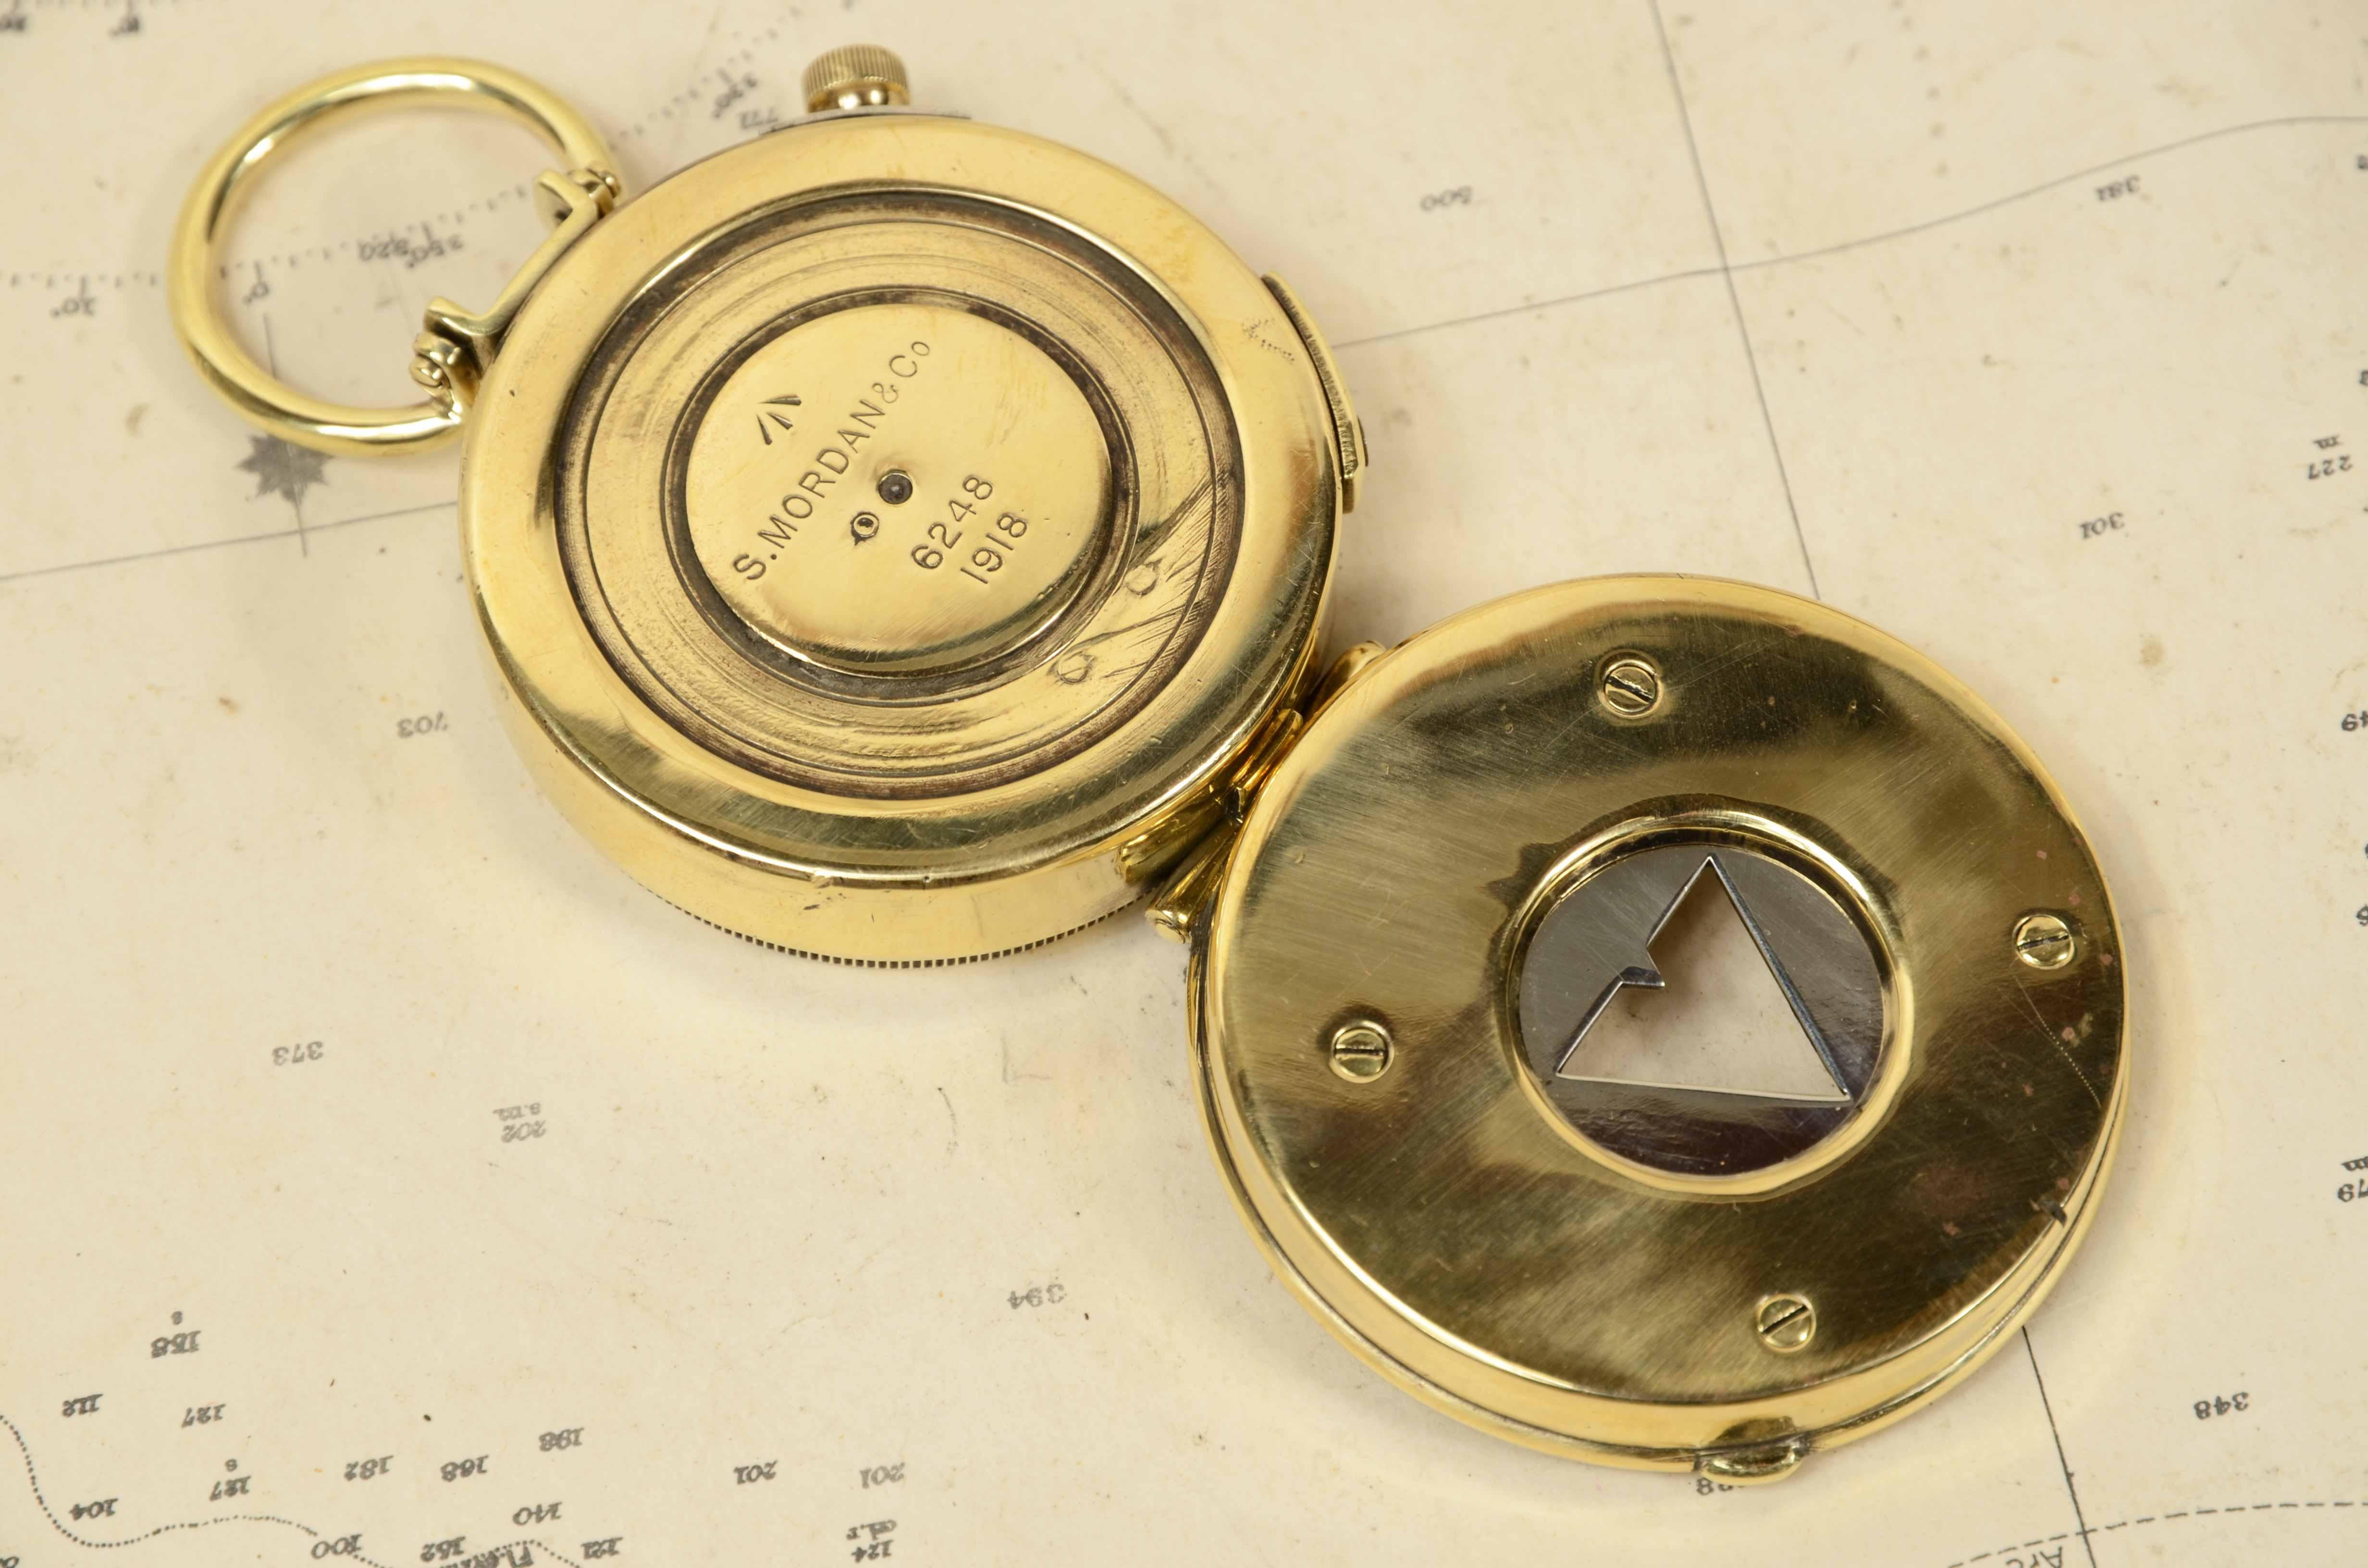 Bussola nautica da tasca in ottone del 1918  firmata S. Mordan & Co n. 6248. 2